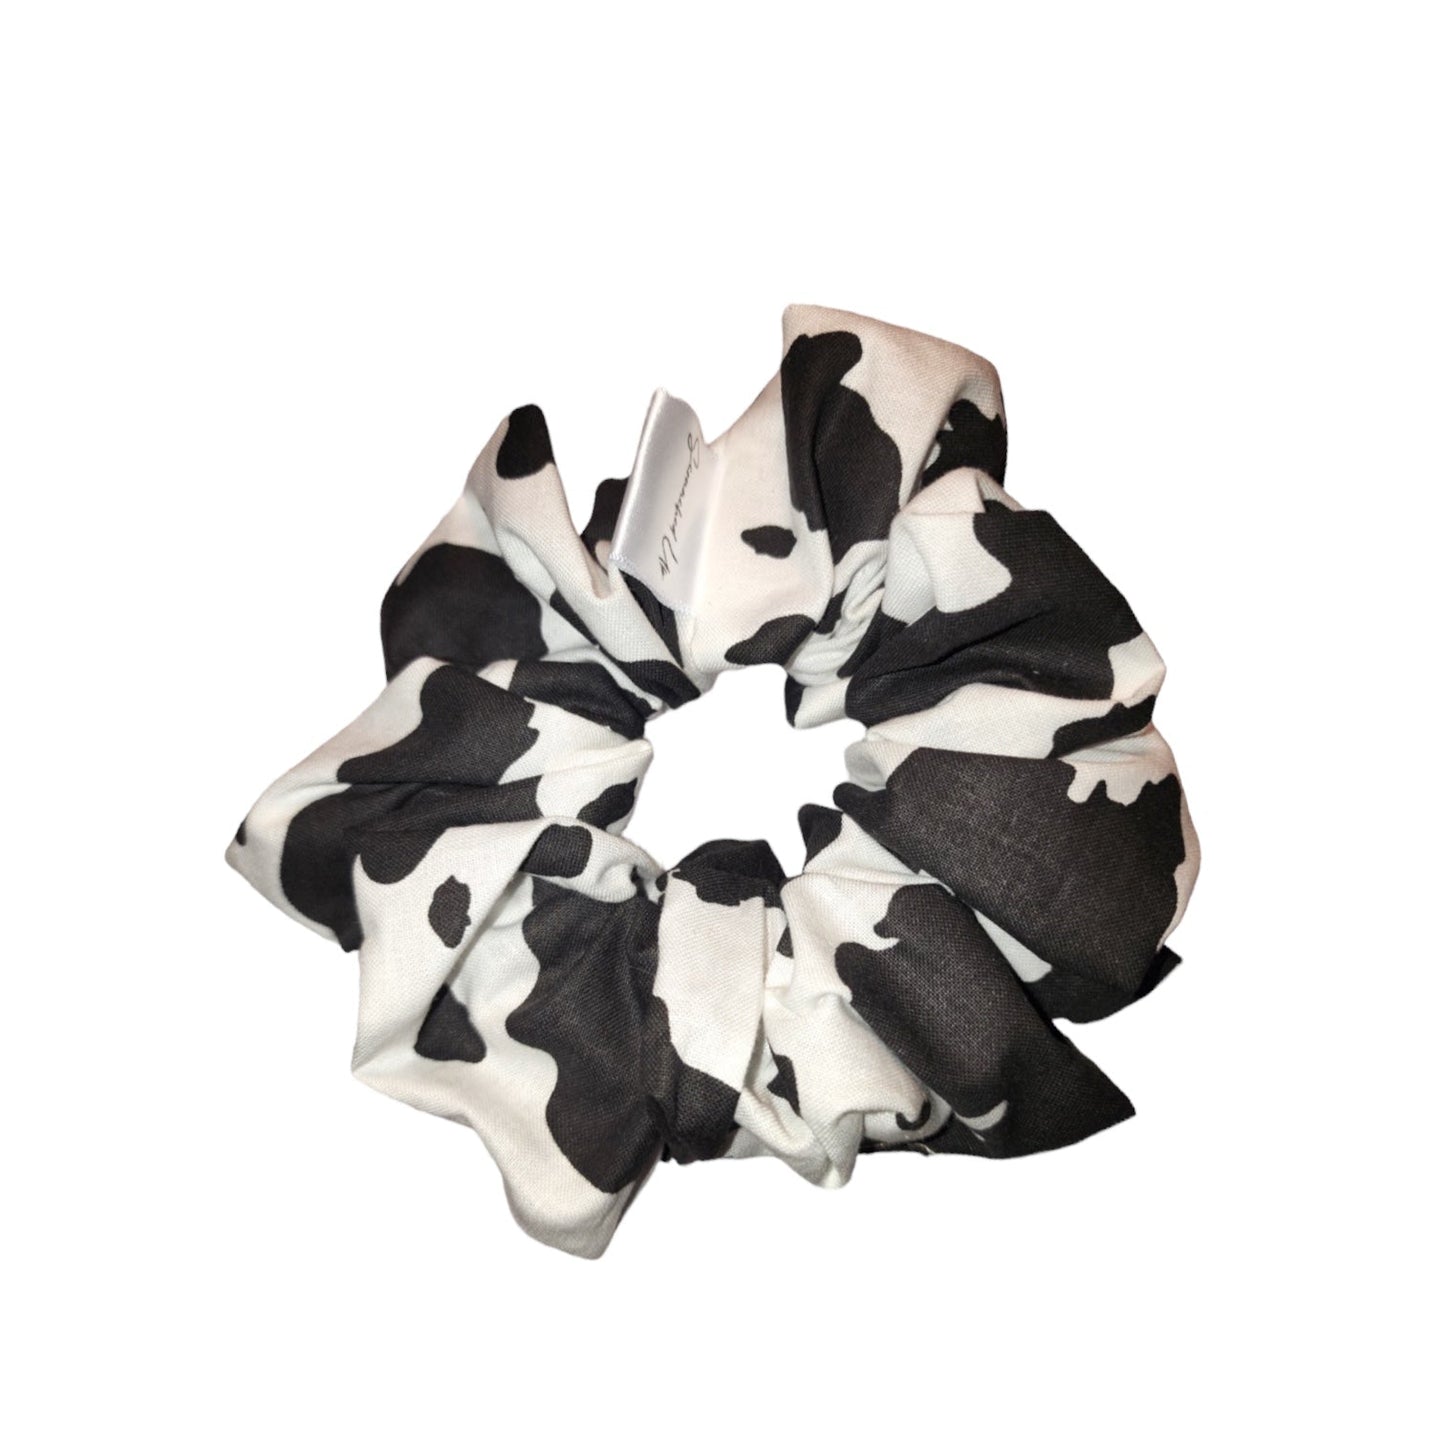 Cow print  scrunchies